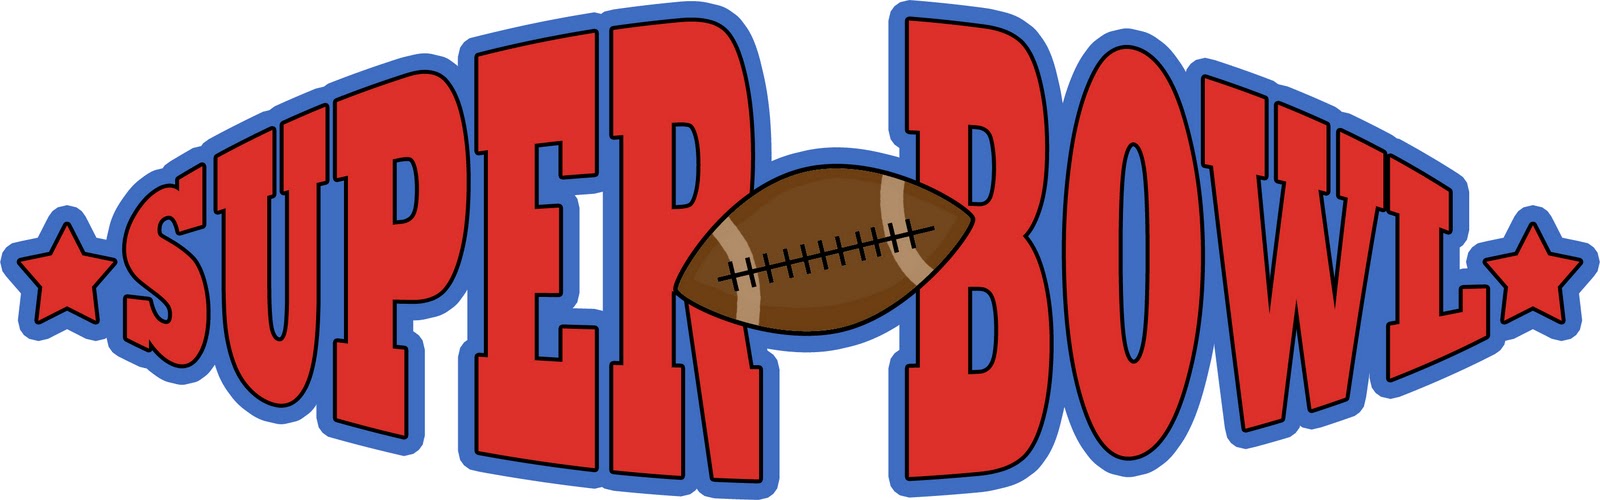 ... Clipart Super Bowl Footba - Super Bowl Clip Art Free